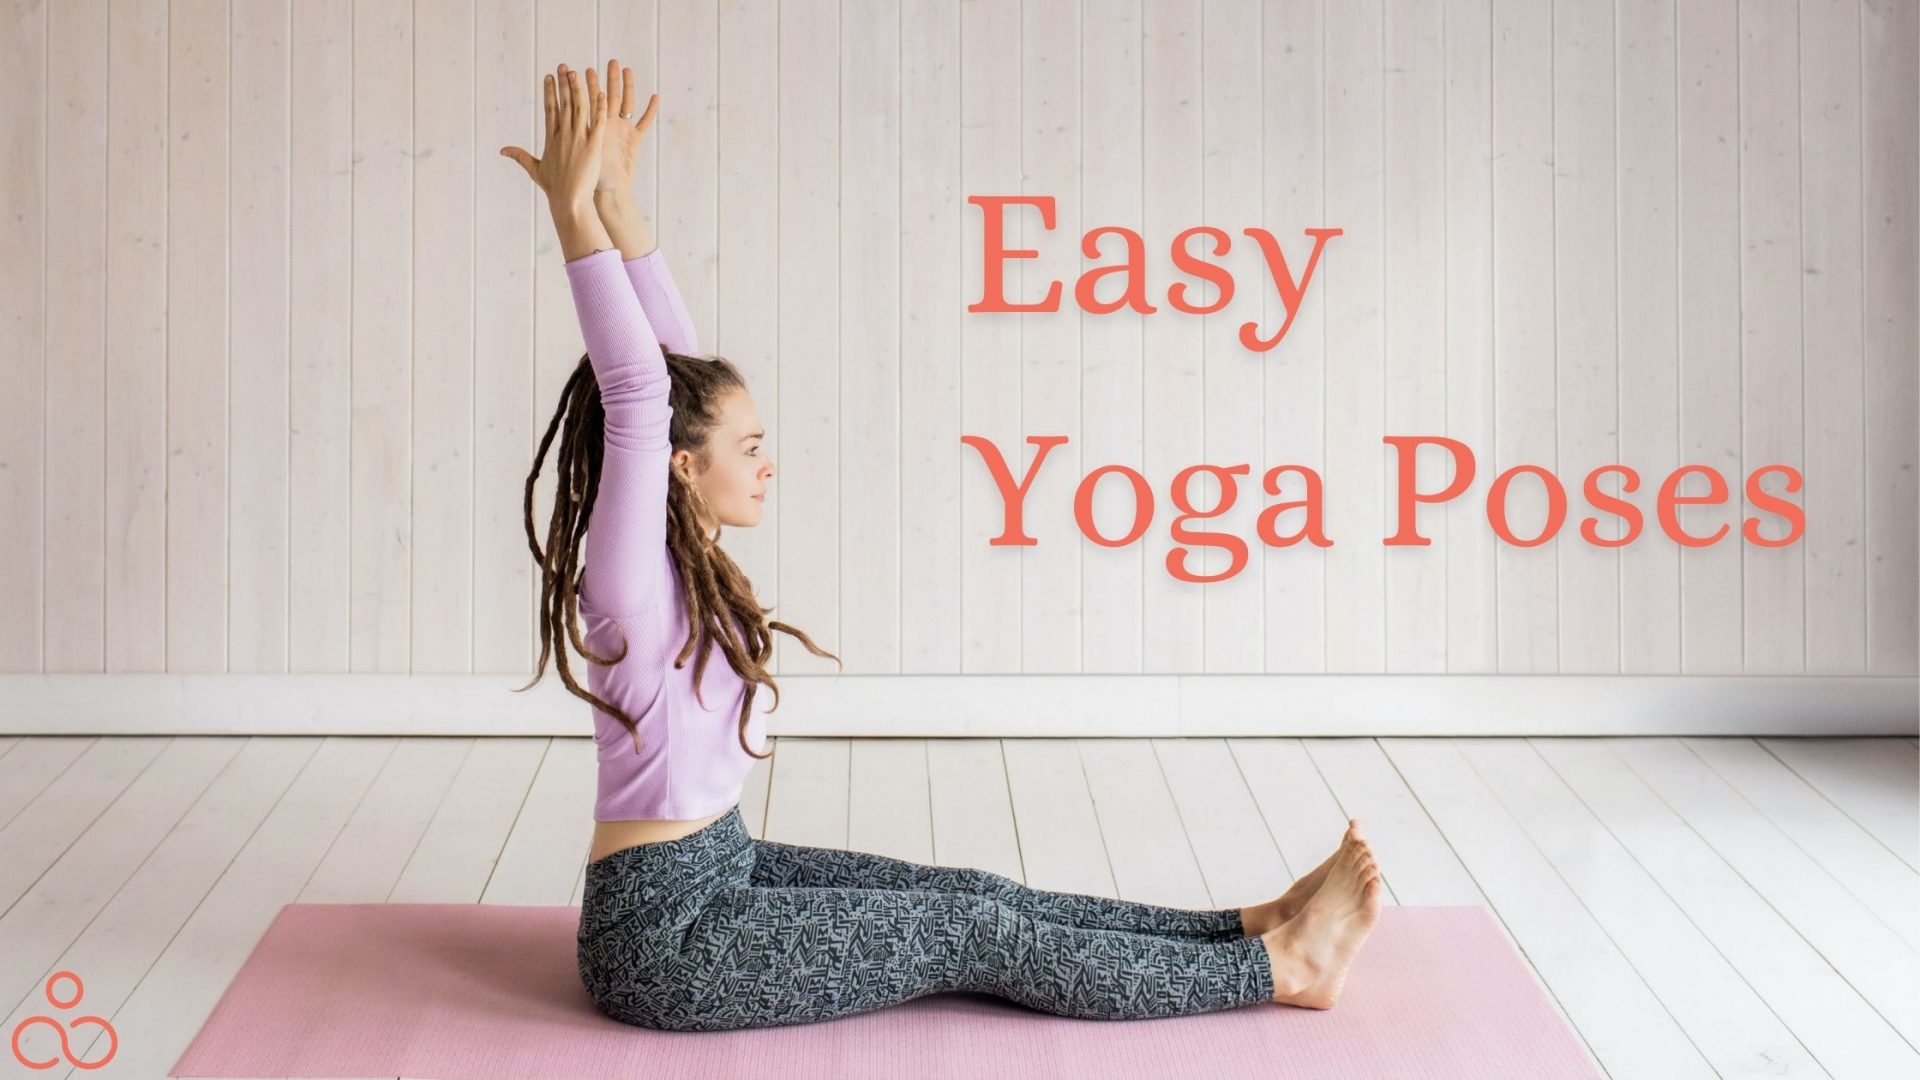 5 Easy Partner Yoga Poses for Kids + Poster | Kids Yoga Stories